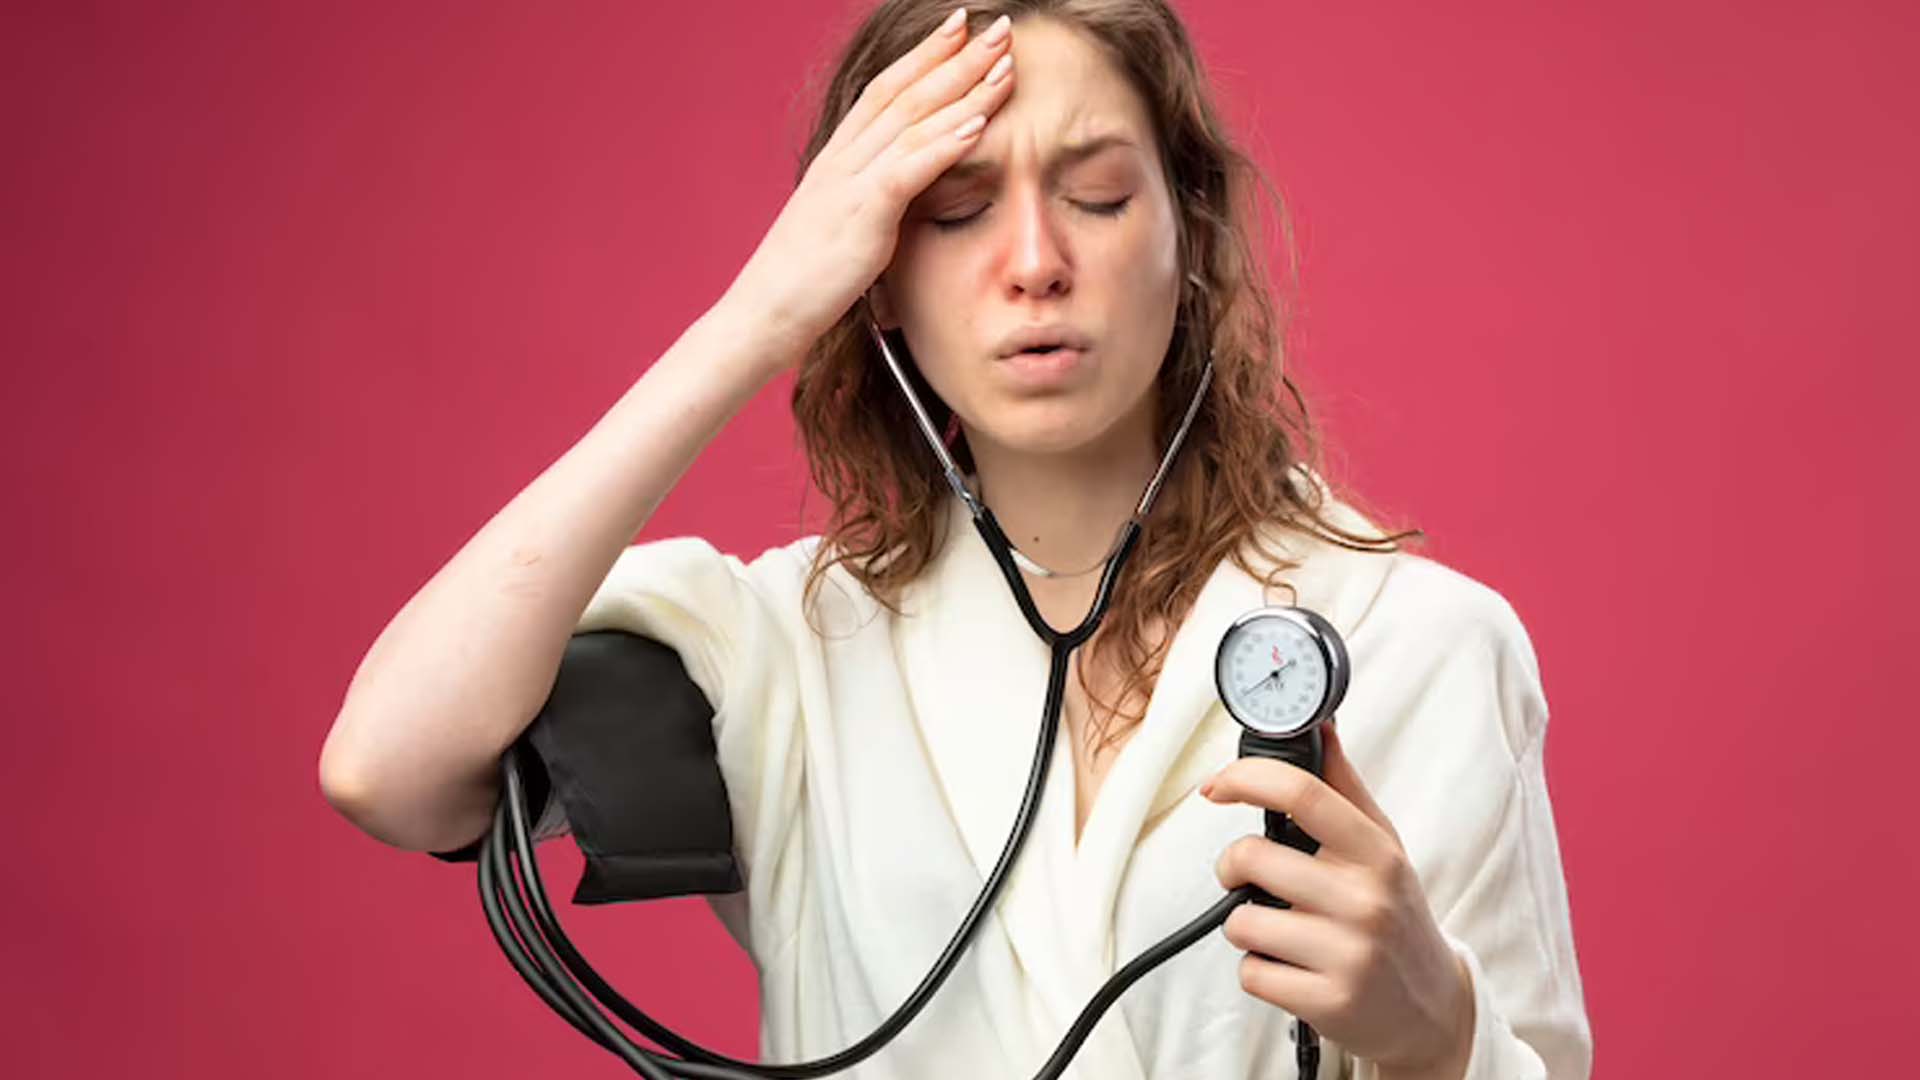 Can High Blood Pressure Cause Headaches?